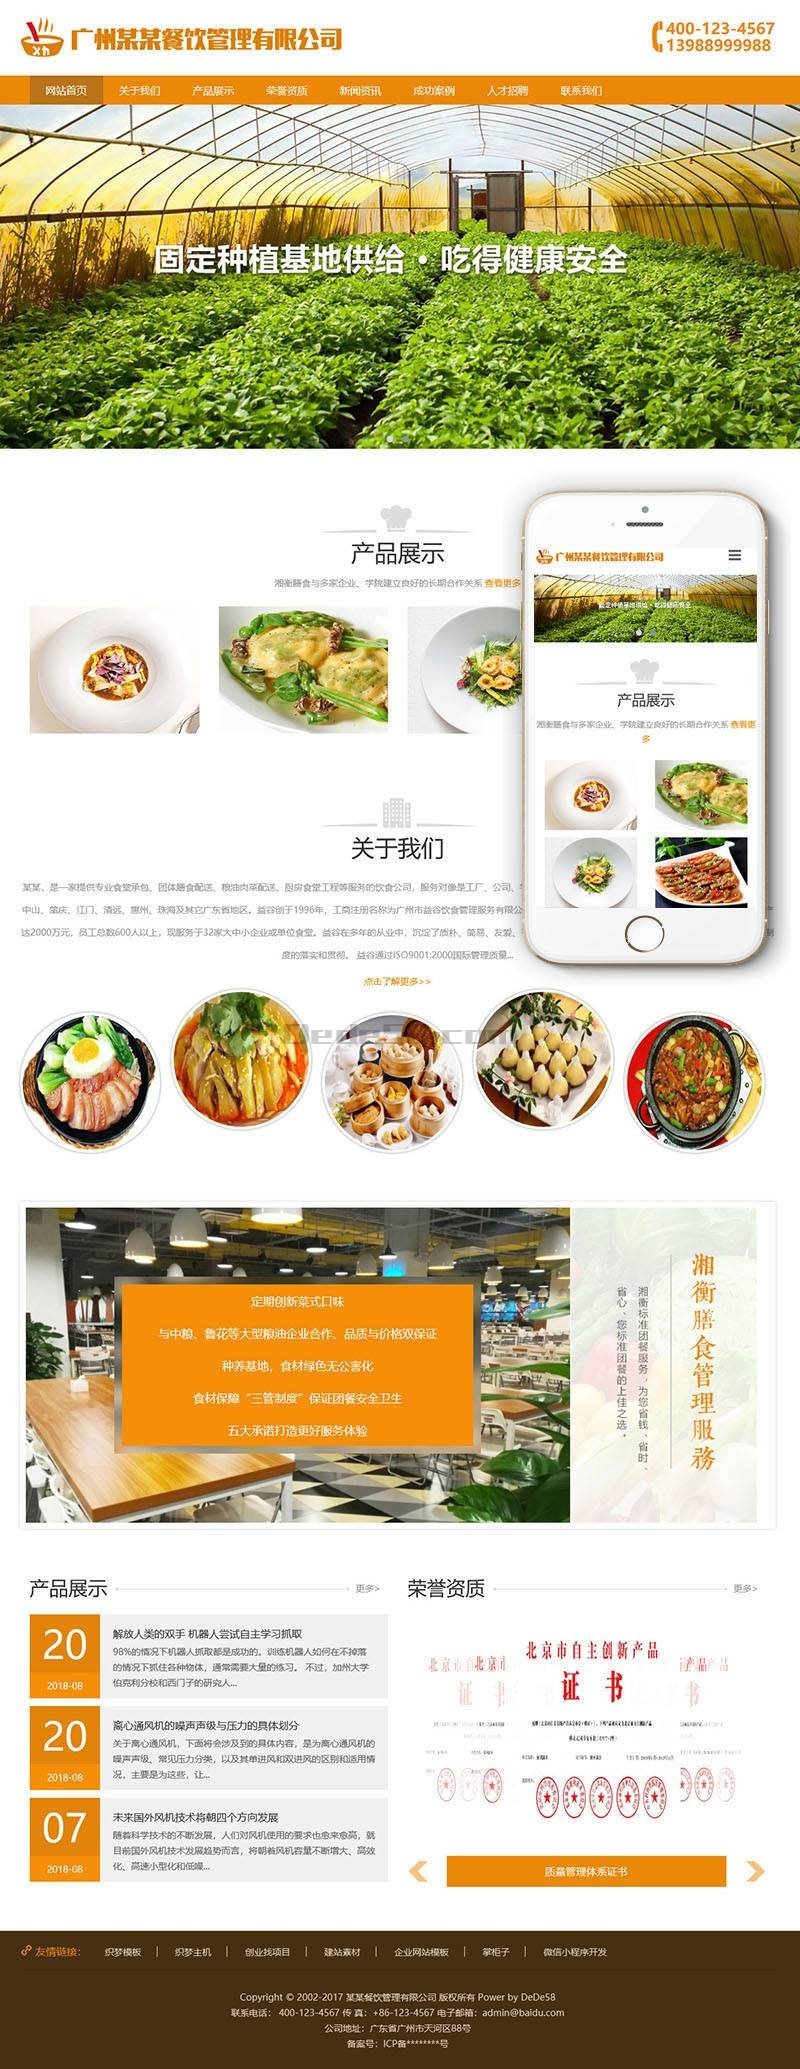 响应式膳食餐饮管理类织梦模板(自适应手机端)